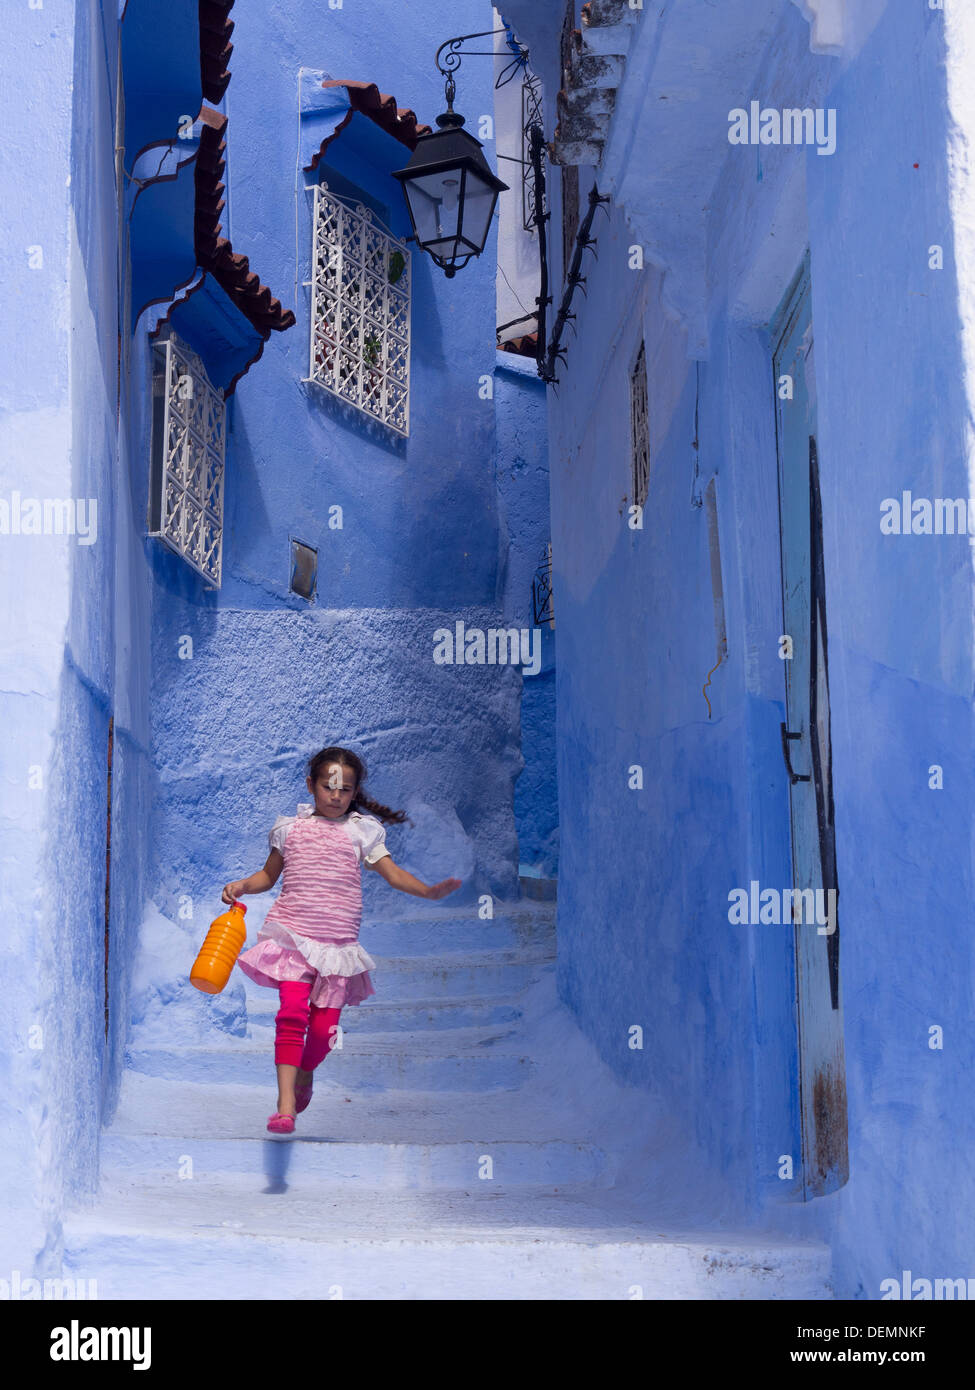 Jeune fille courir dans la rue avec des maisons peintes en bleu clair à Chefchaouen, Maroc Banque D'Images